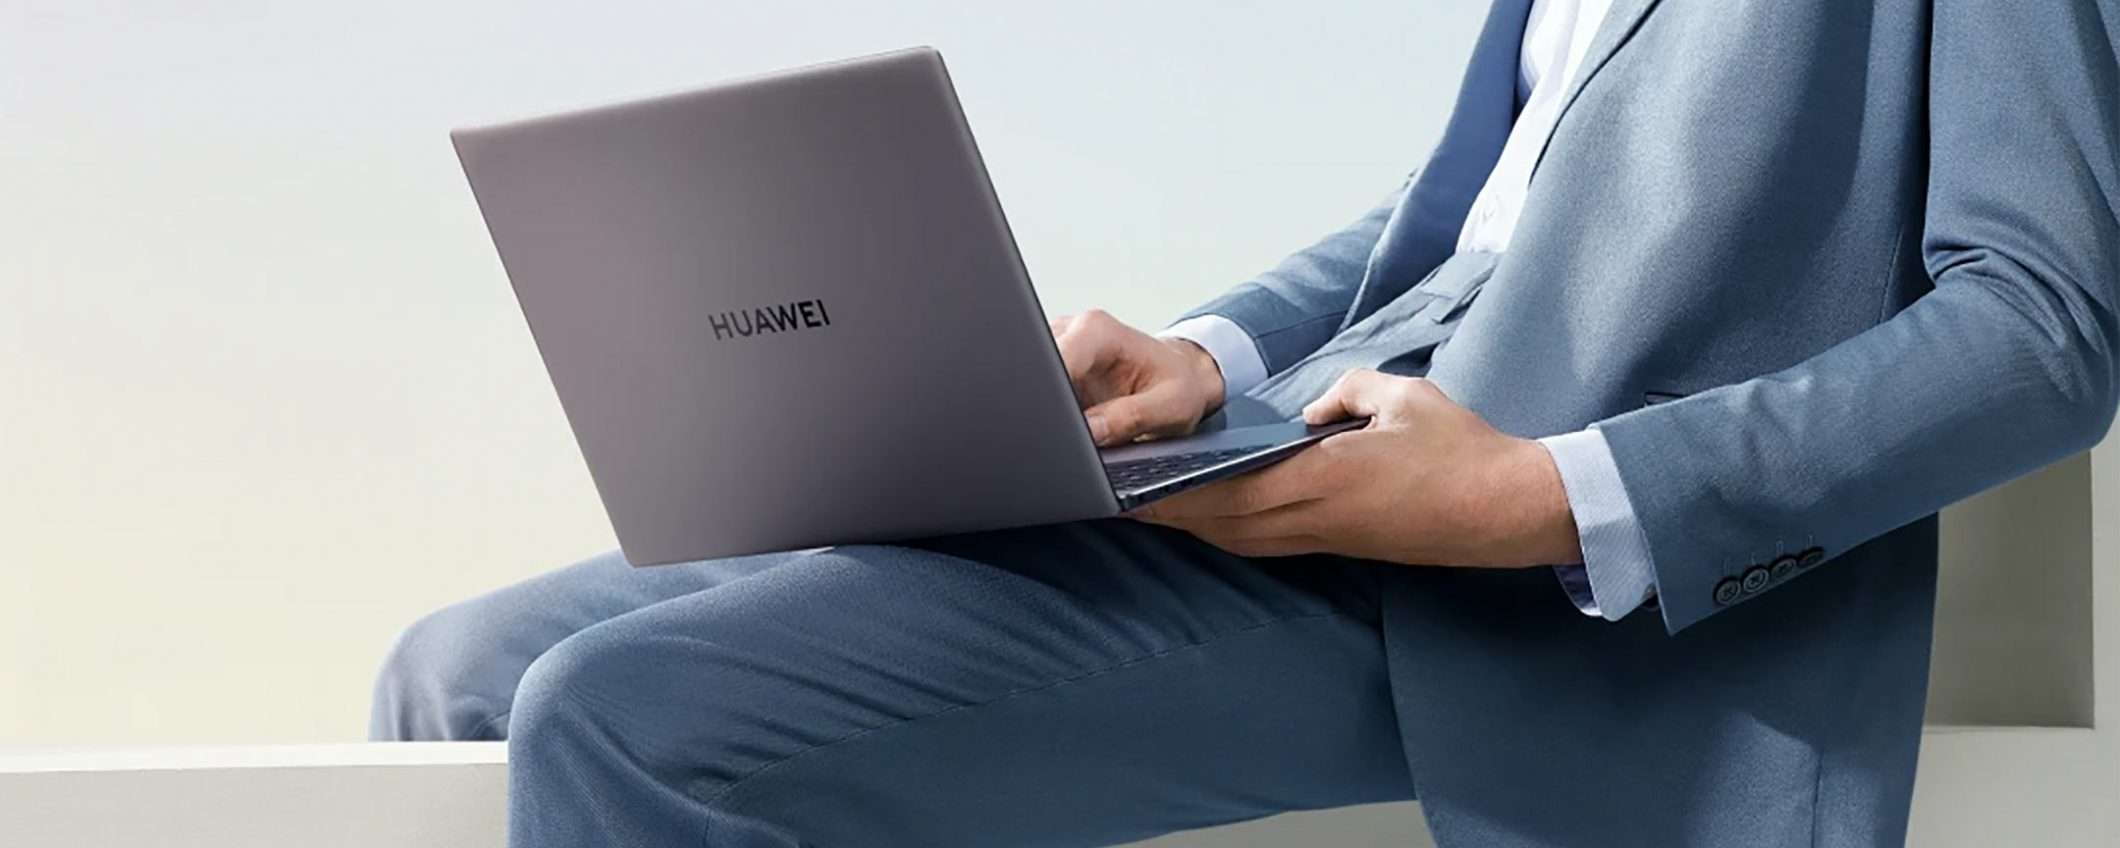 Huawei, laptop top di gamma assoluto: SCONTO 400 €